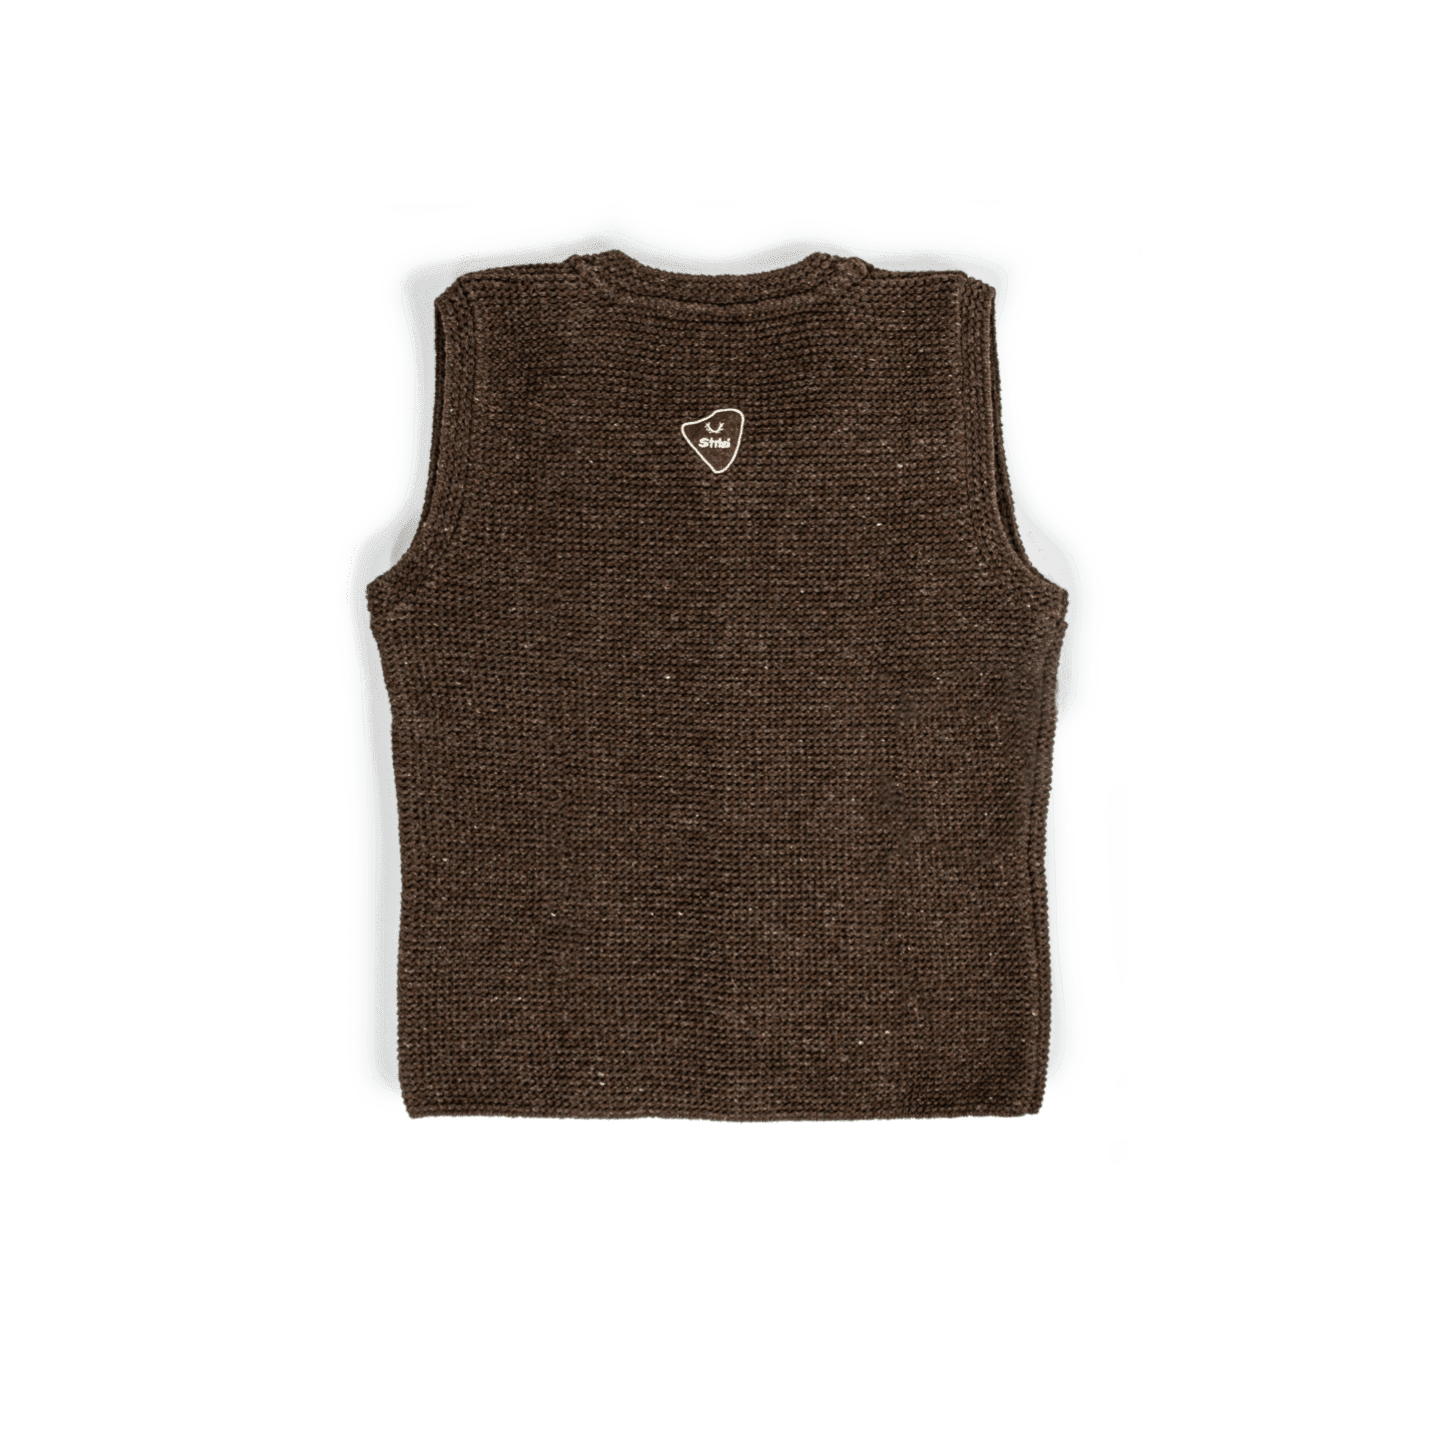 Strizi Herren Strickweste braun 2 - Strizi Knitted vest brown